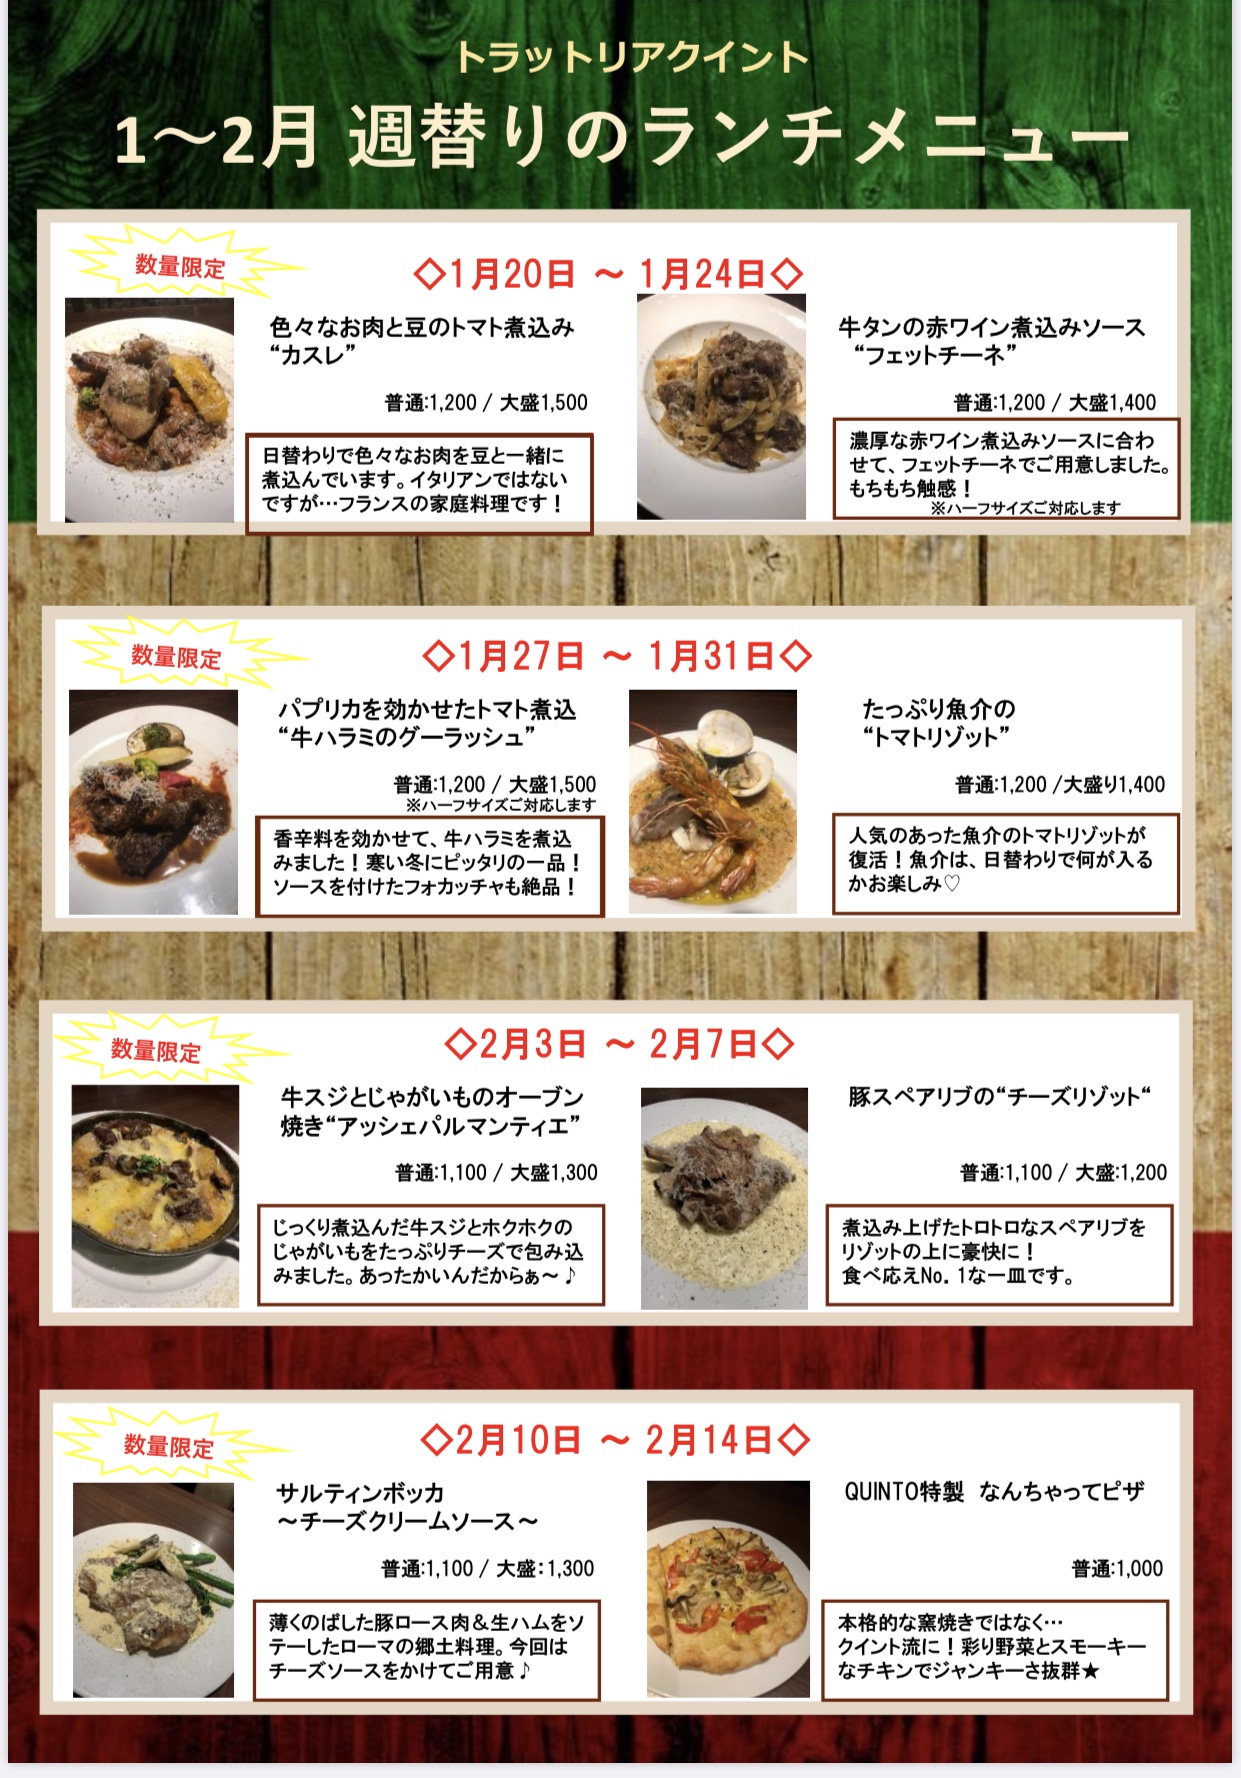 平日限定 ランチ週替わりメニュー 1月 2月お知らせ 東京食彩株式会社